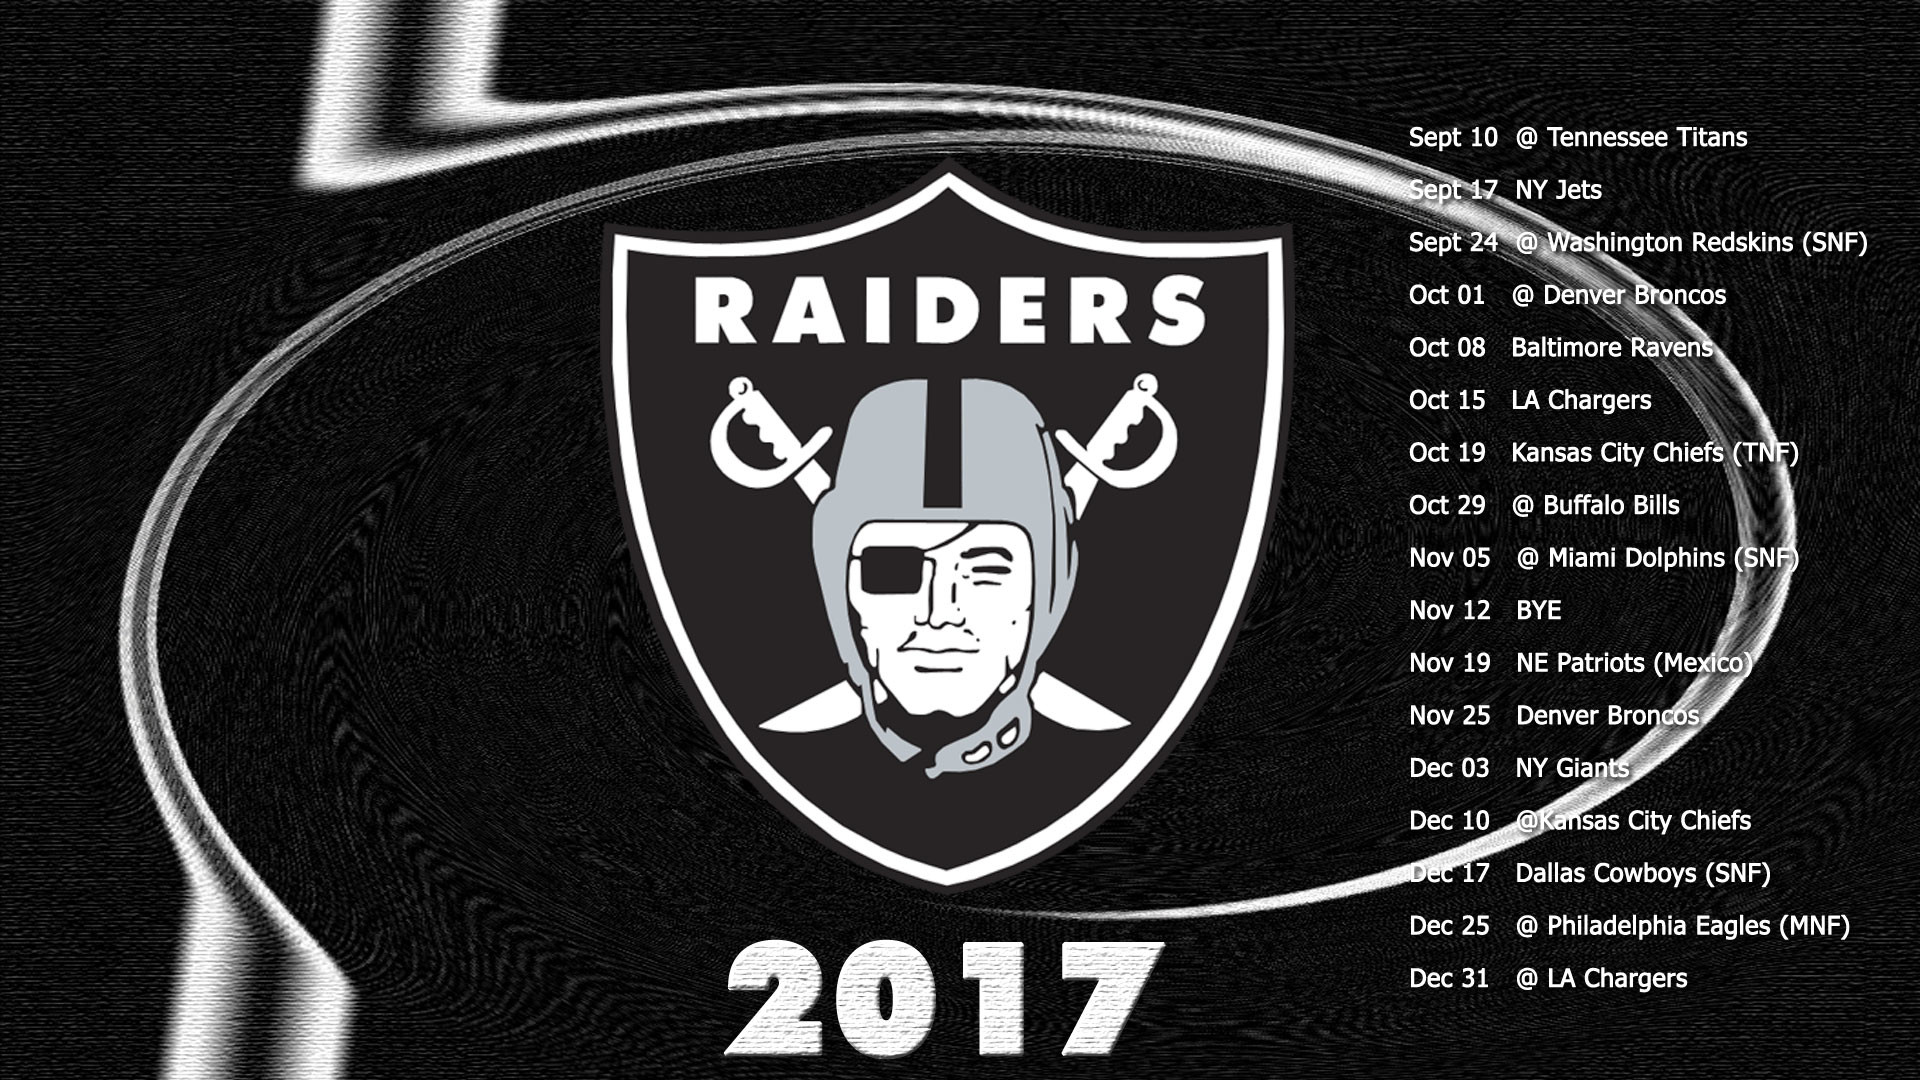 2017 Raiders Schedule